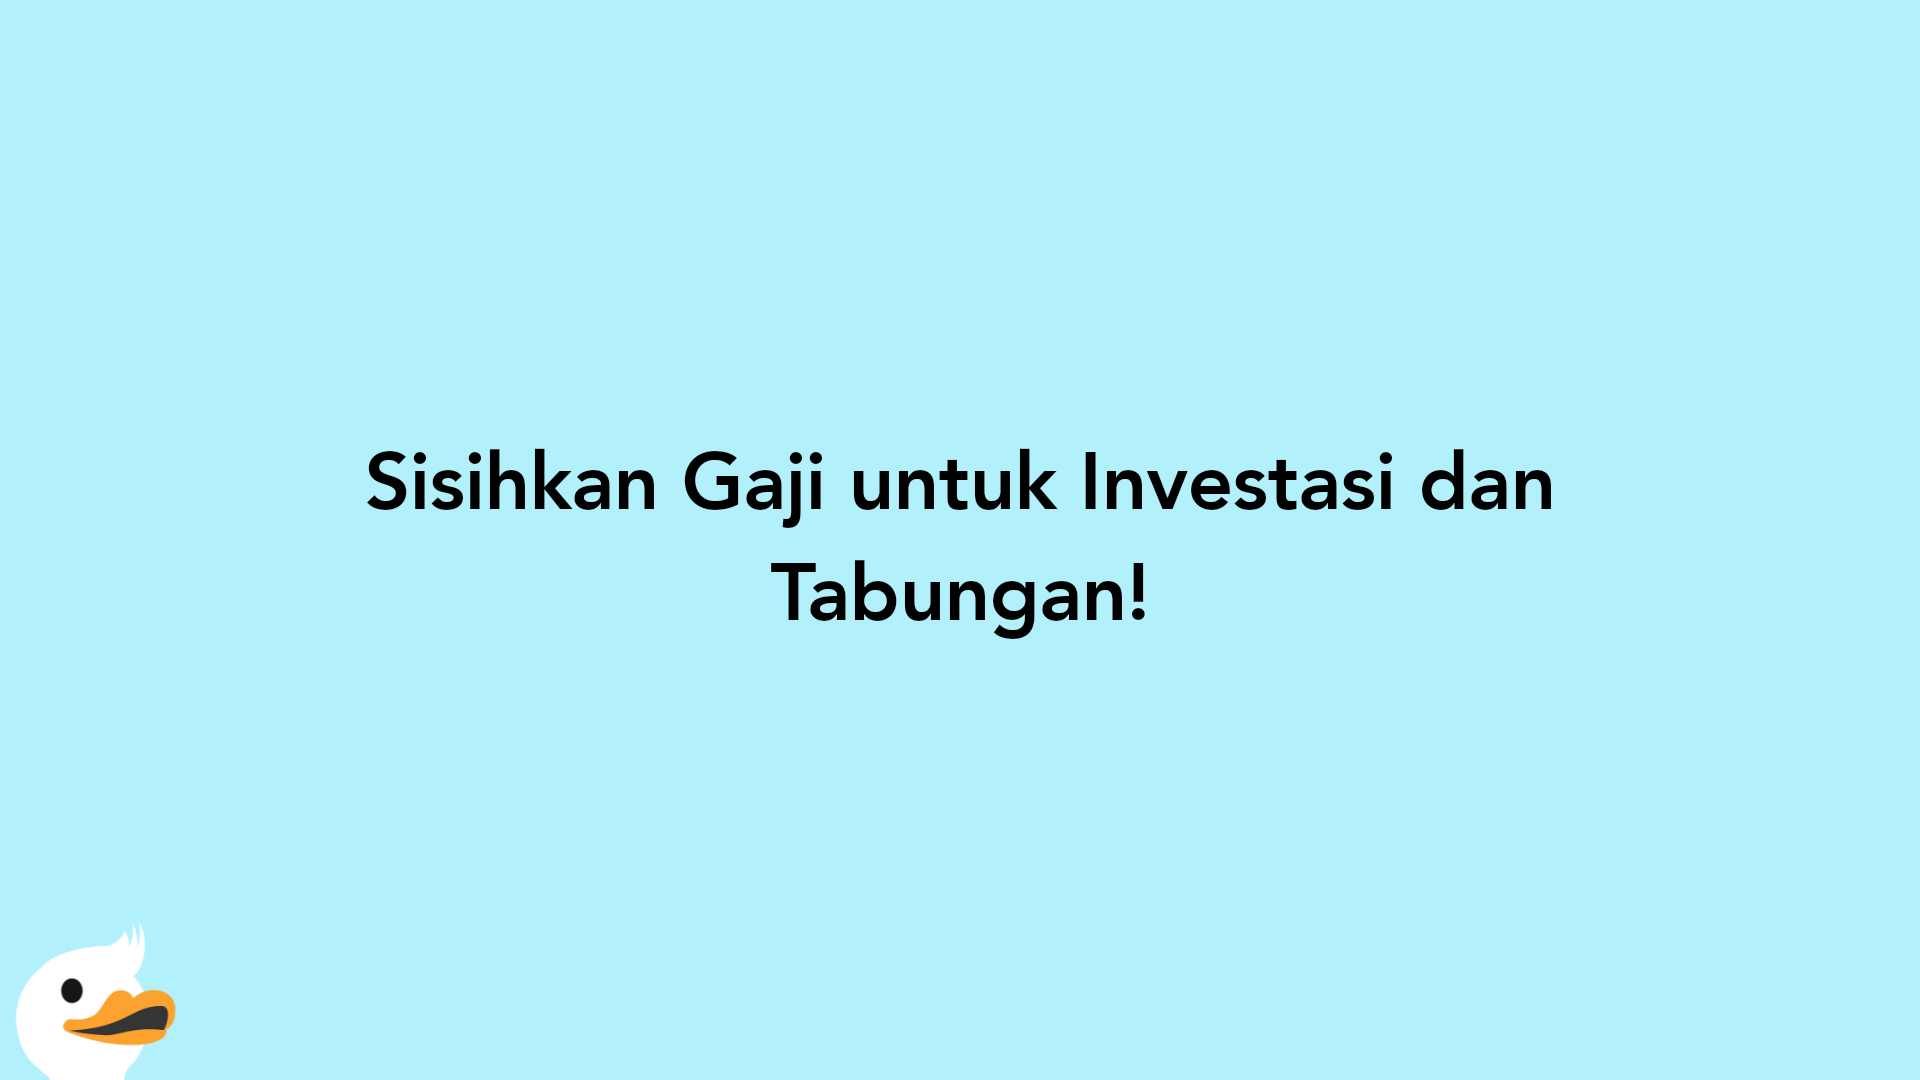 Sisihkan Gaji untuk Investasi dan Tabungan!